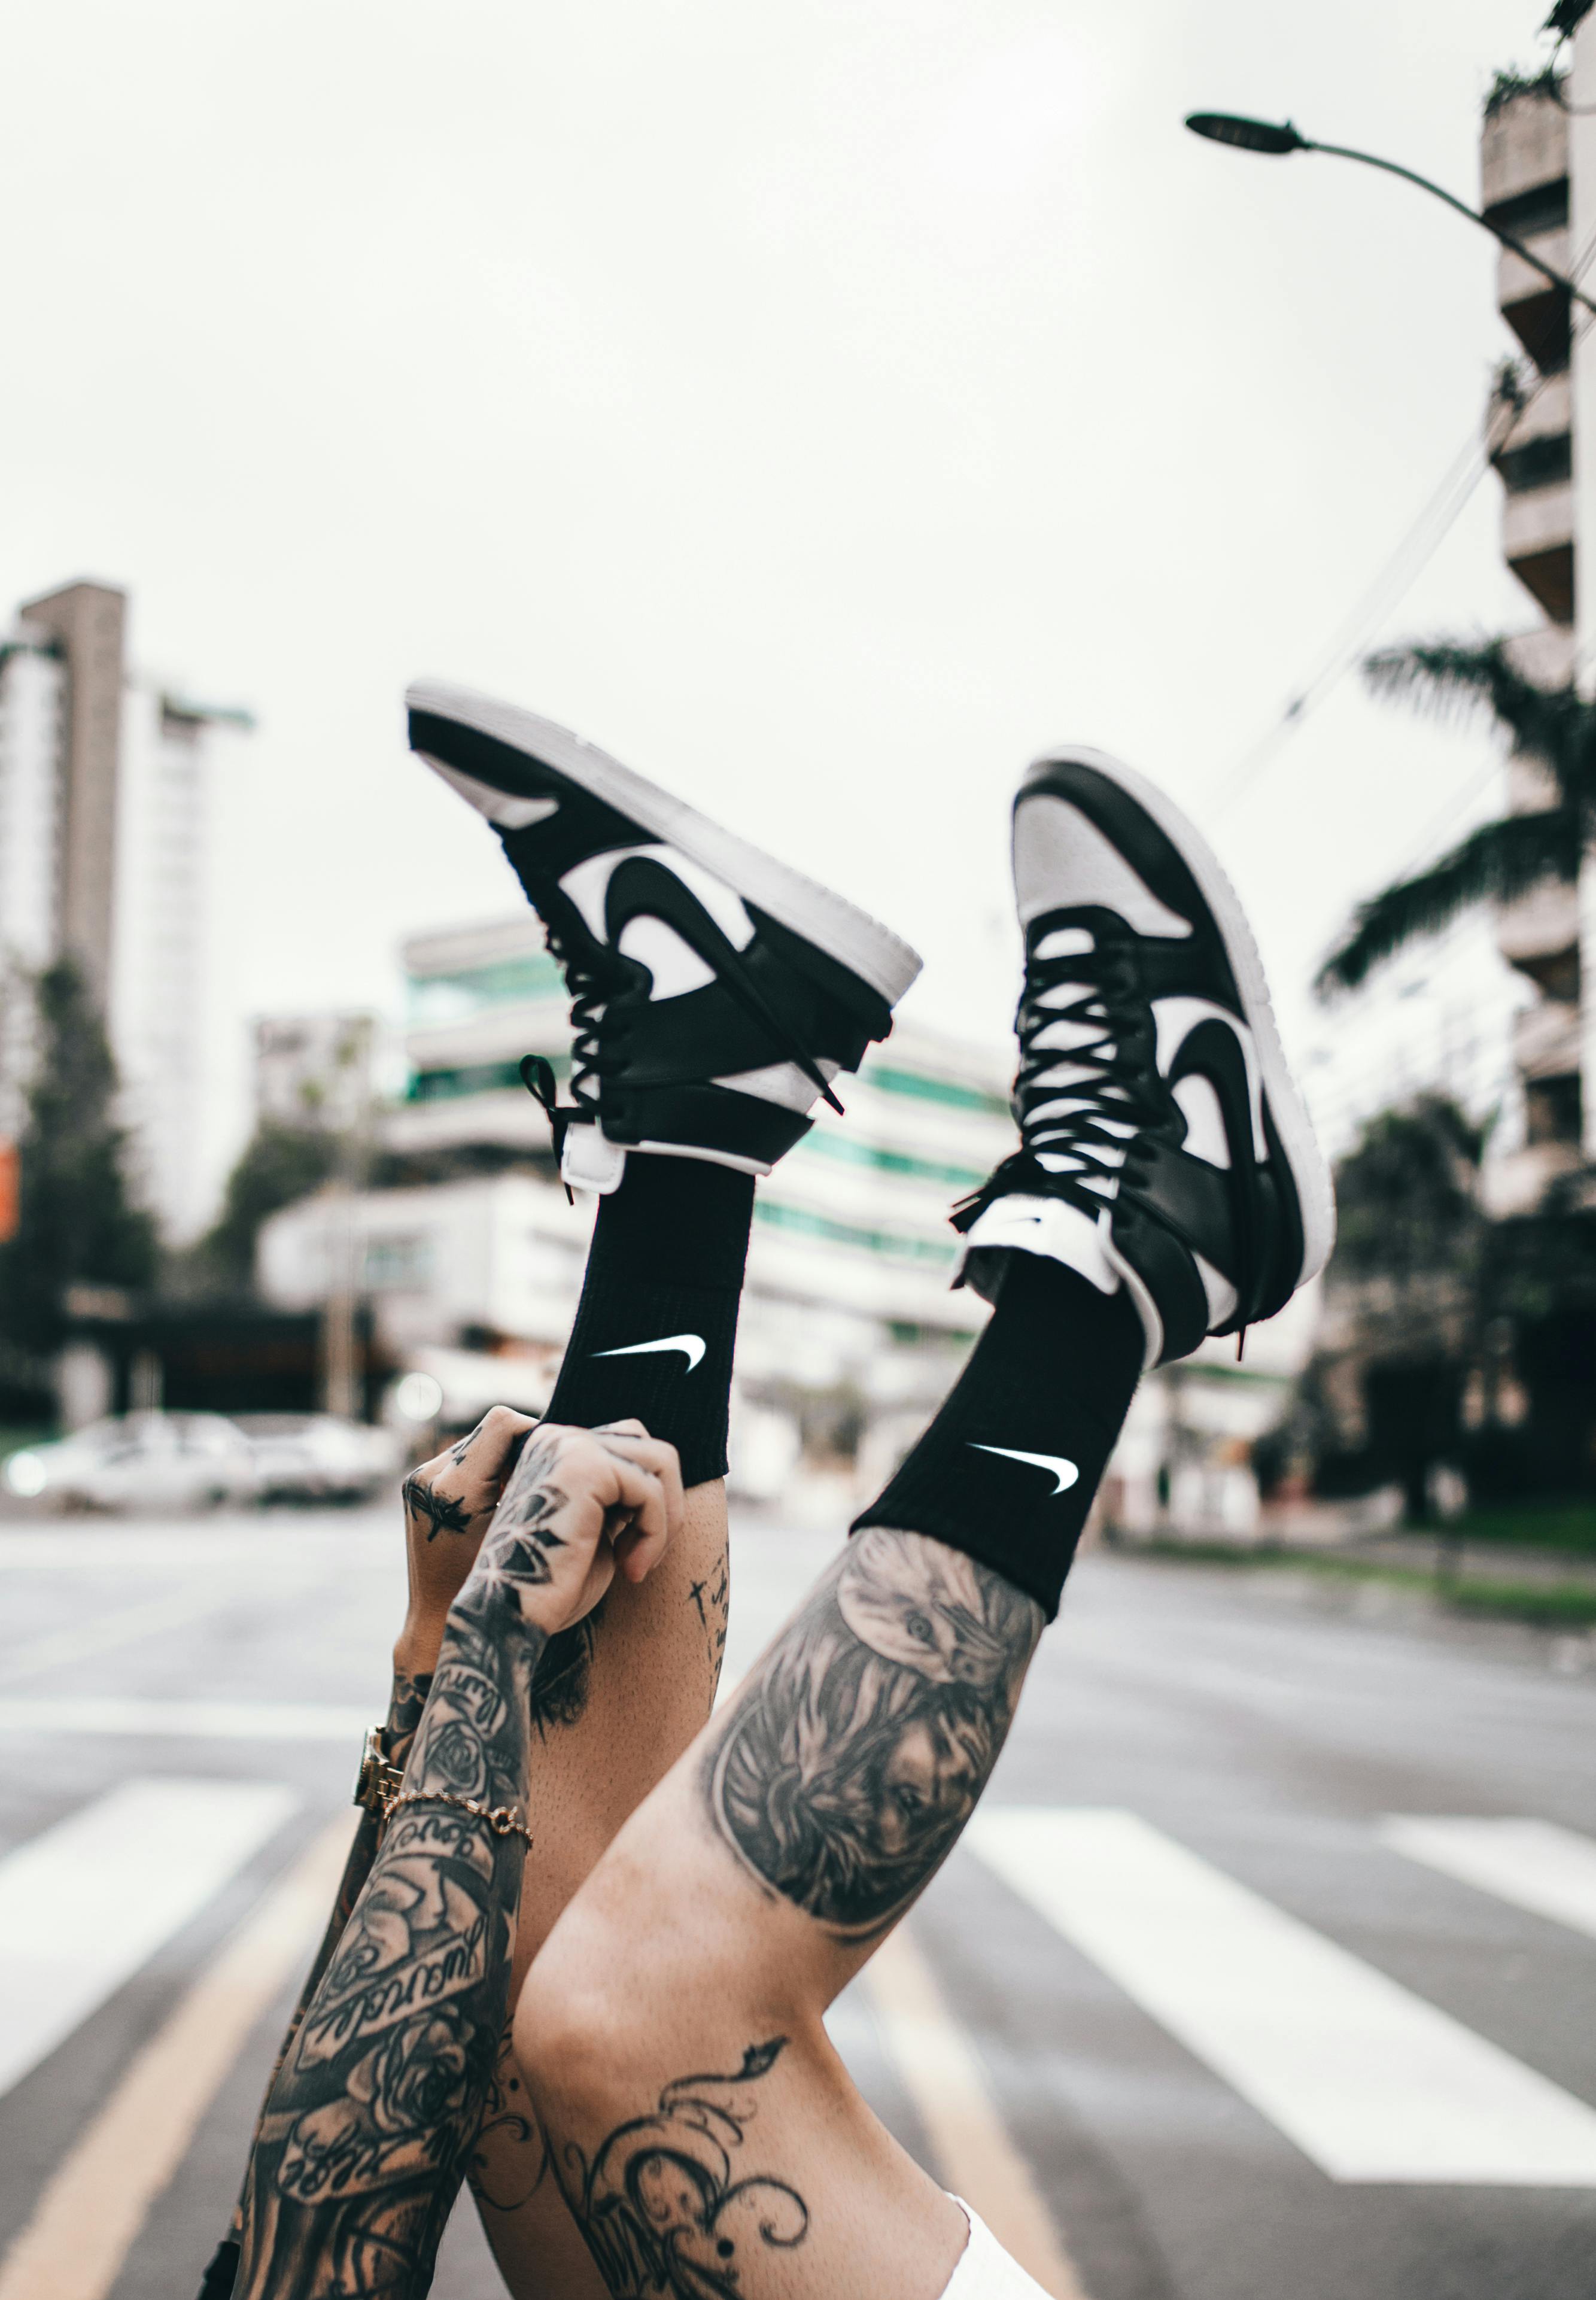 Những hình ảnh và hình nền Air Jordan 1 đẹp nhất | Sneaker Daily